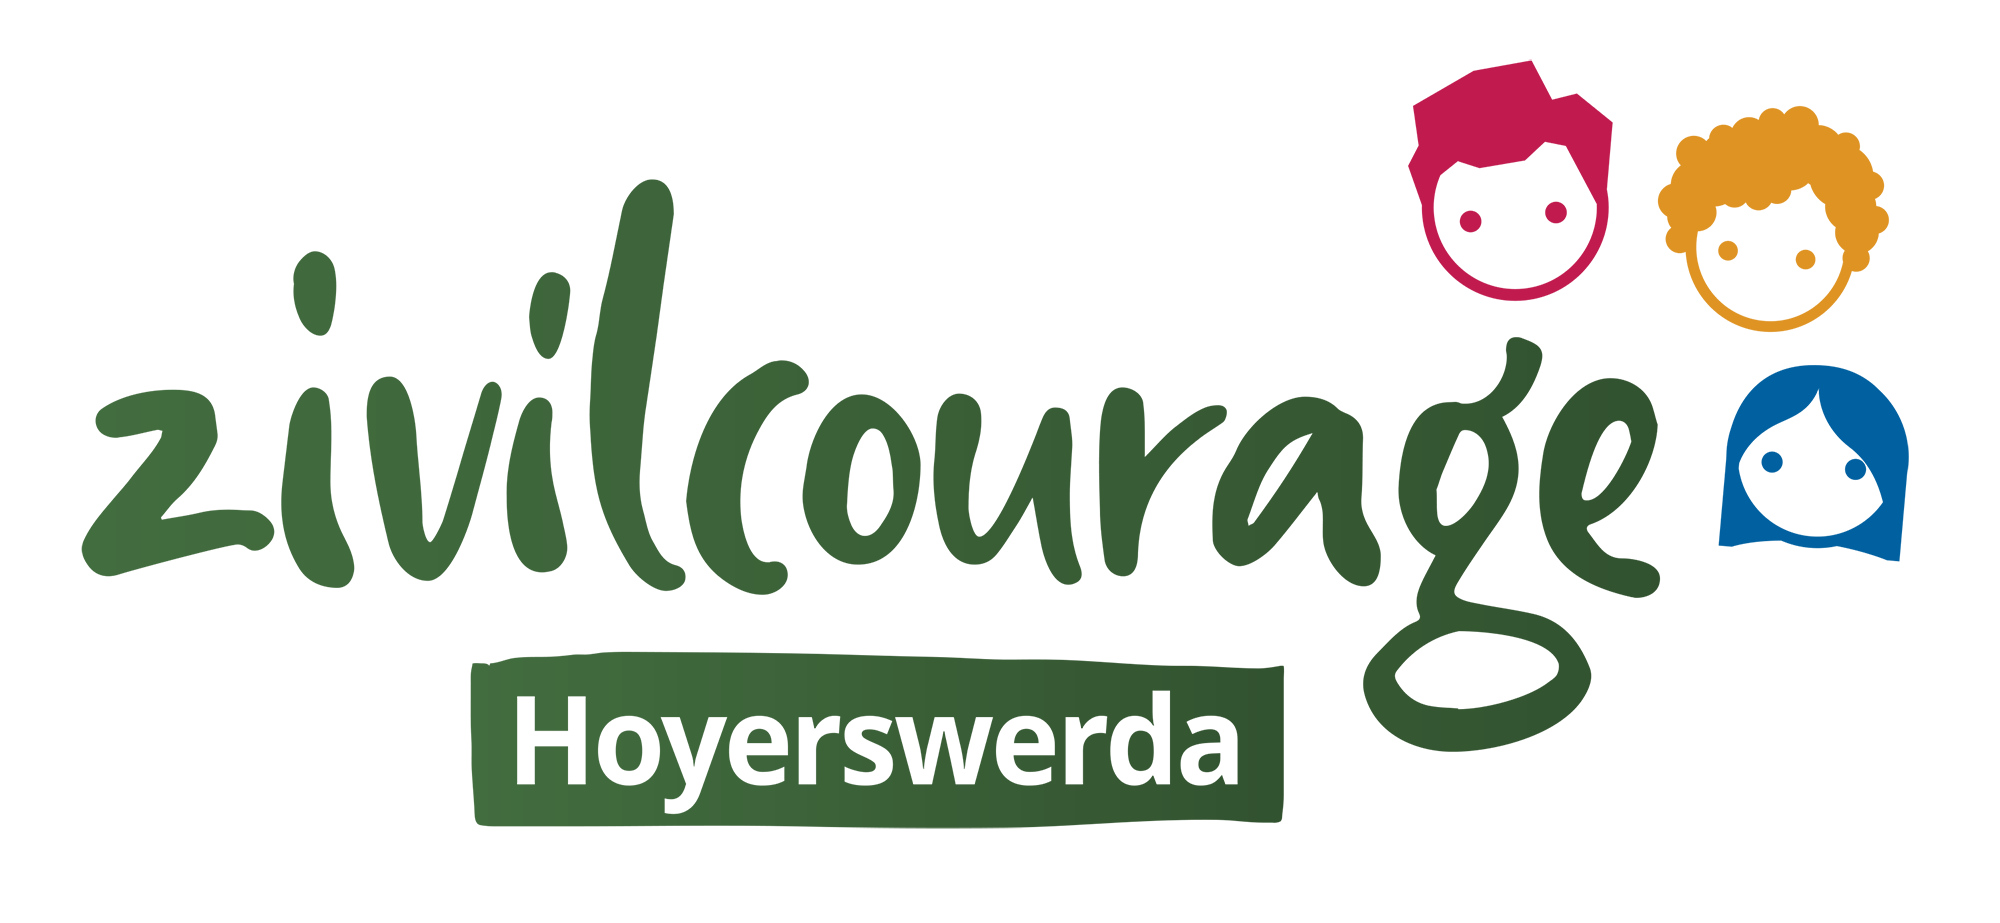 Zivilcourage Hoyerswerda (Logo)